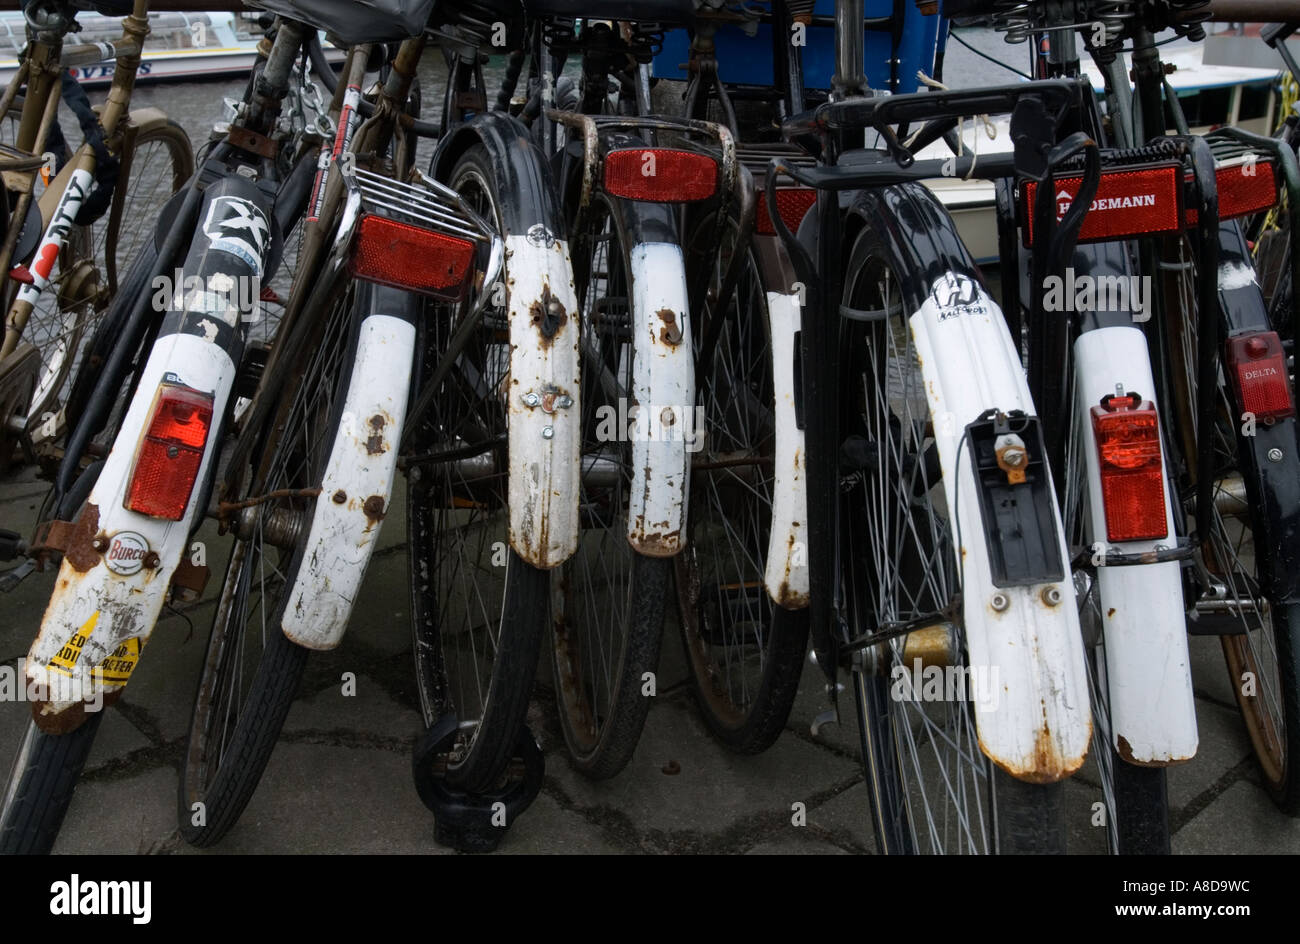 Détail de nombreux vélos stationnés dans le centre de Amsterdam Pays-Bas Banque D'Images